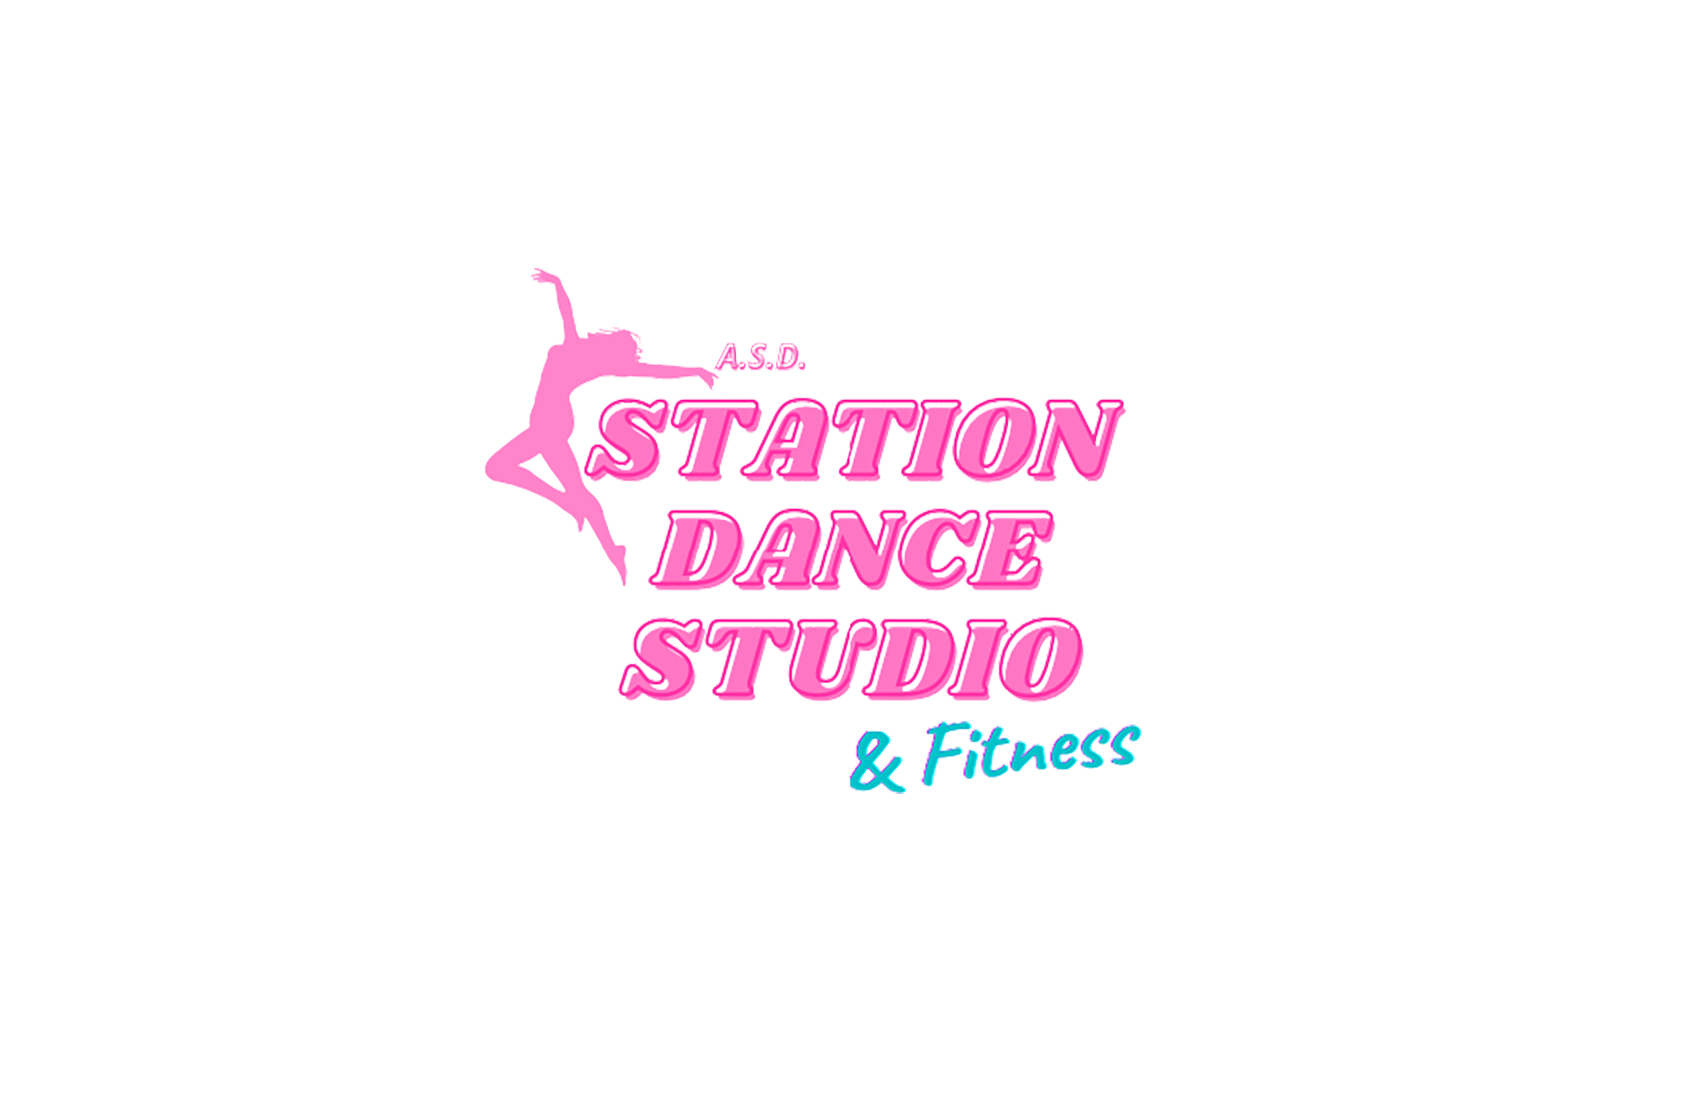 Station Dance Studio & Fitness Corgnolo - Porpetto